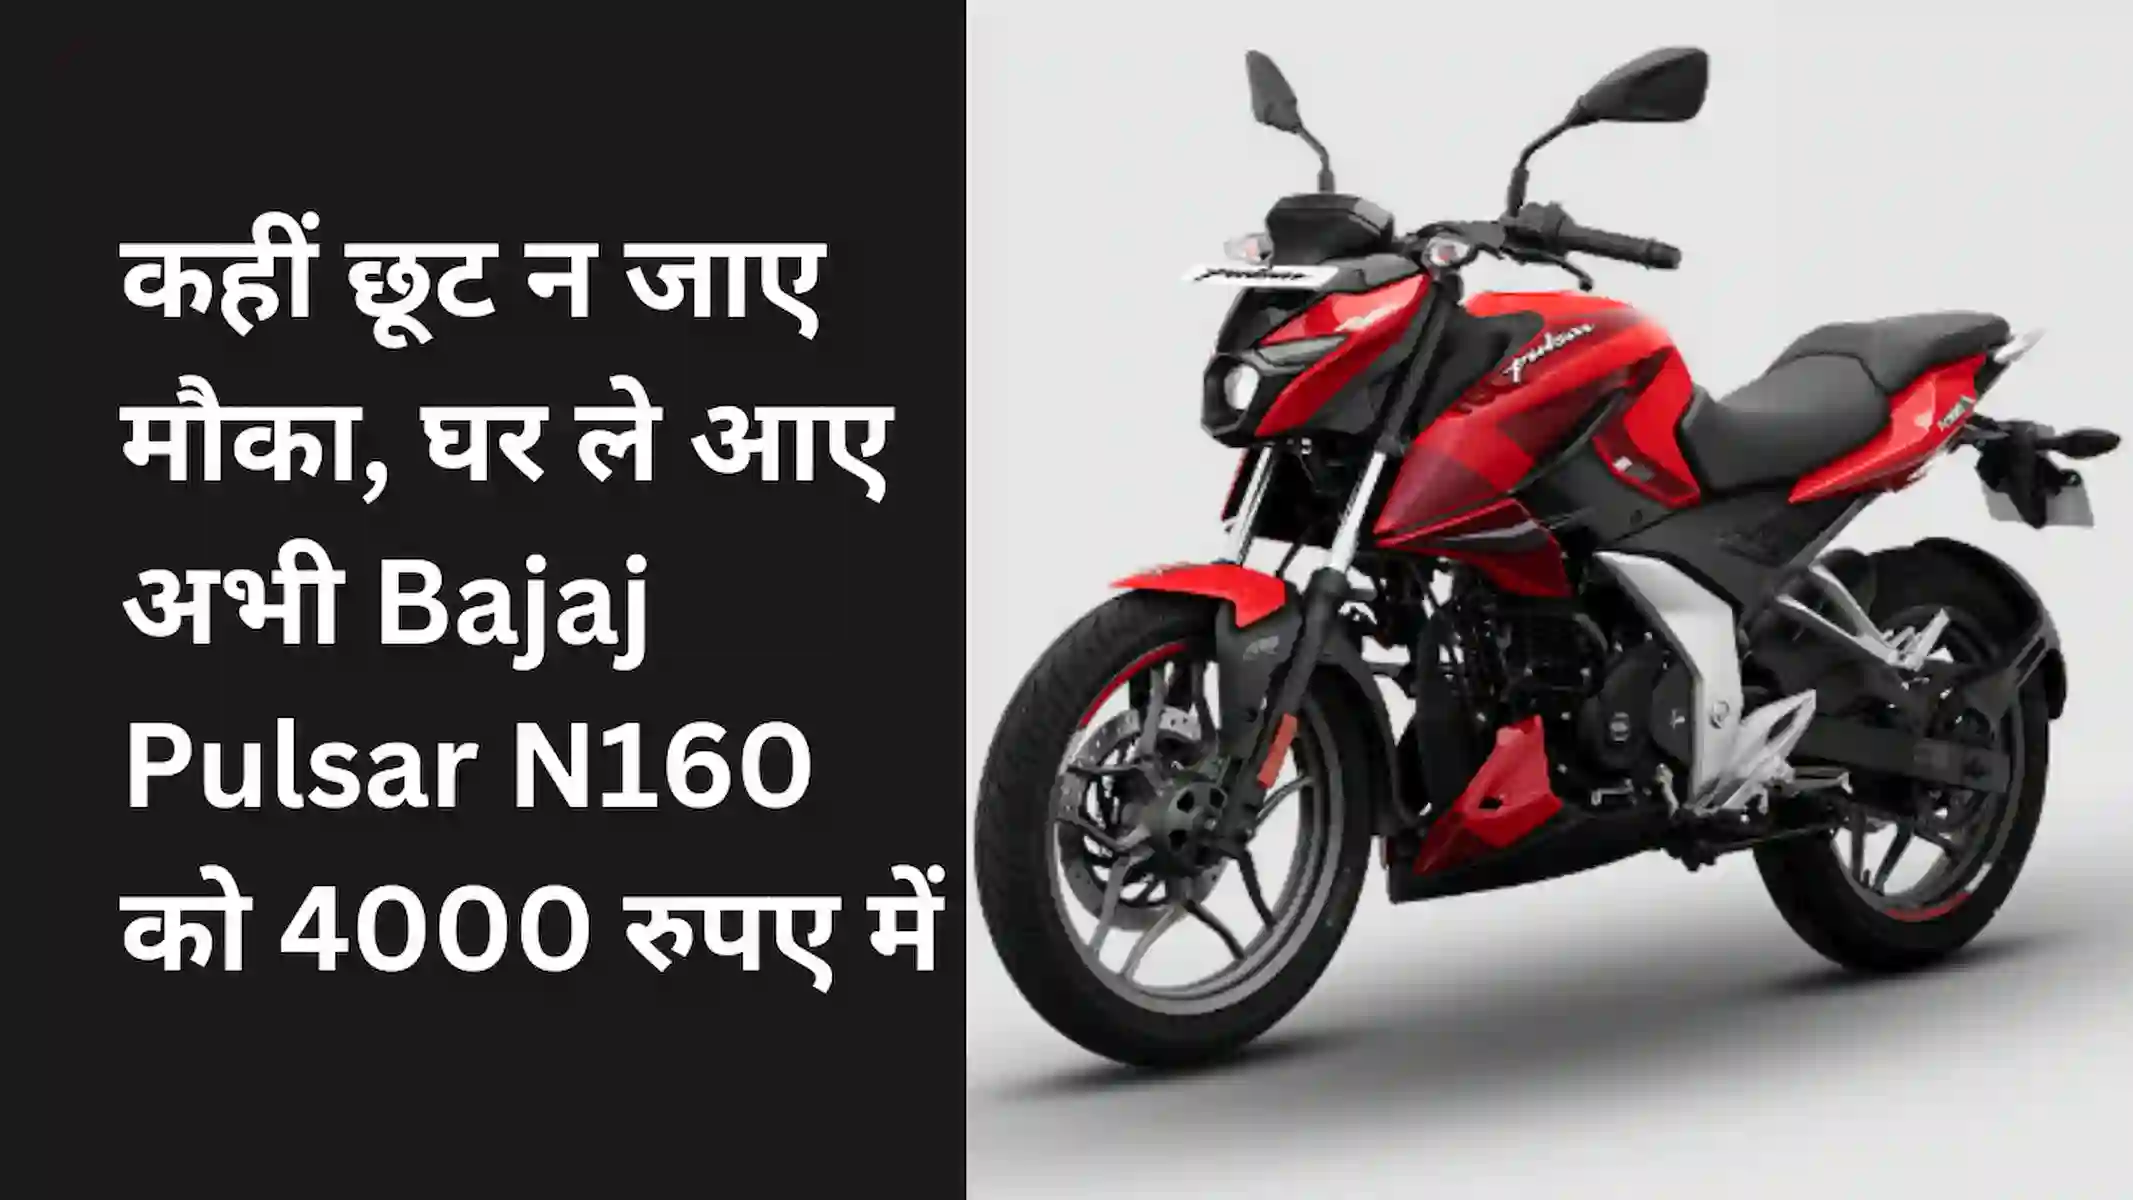 कहीं छूट न जाए मौका, घर ले आए अभी Bajaj Pulsar N160 को 4000 रुपए में (Bajaj Pulsar N160 Loan)